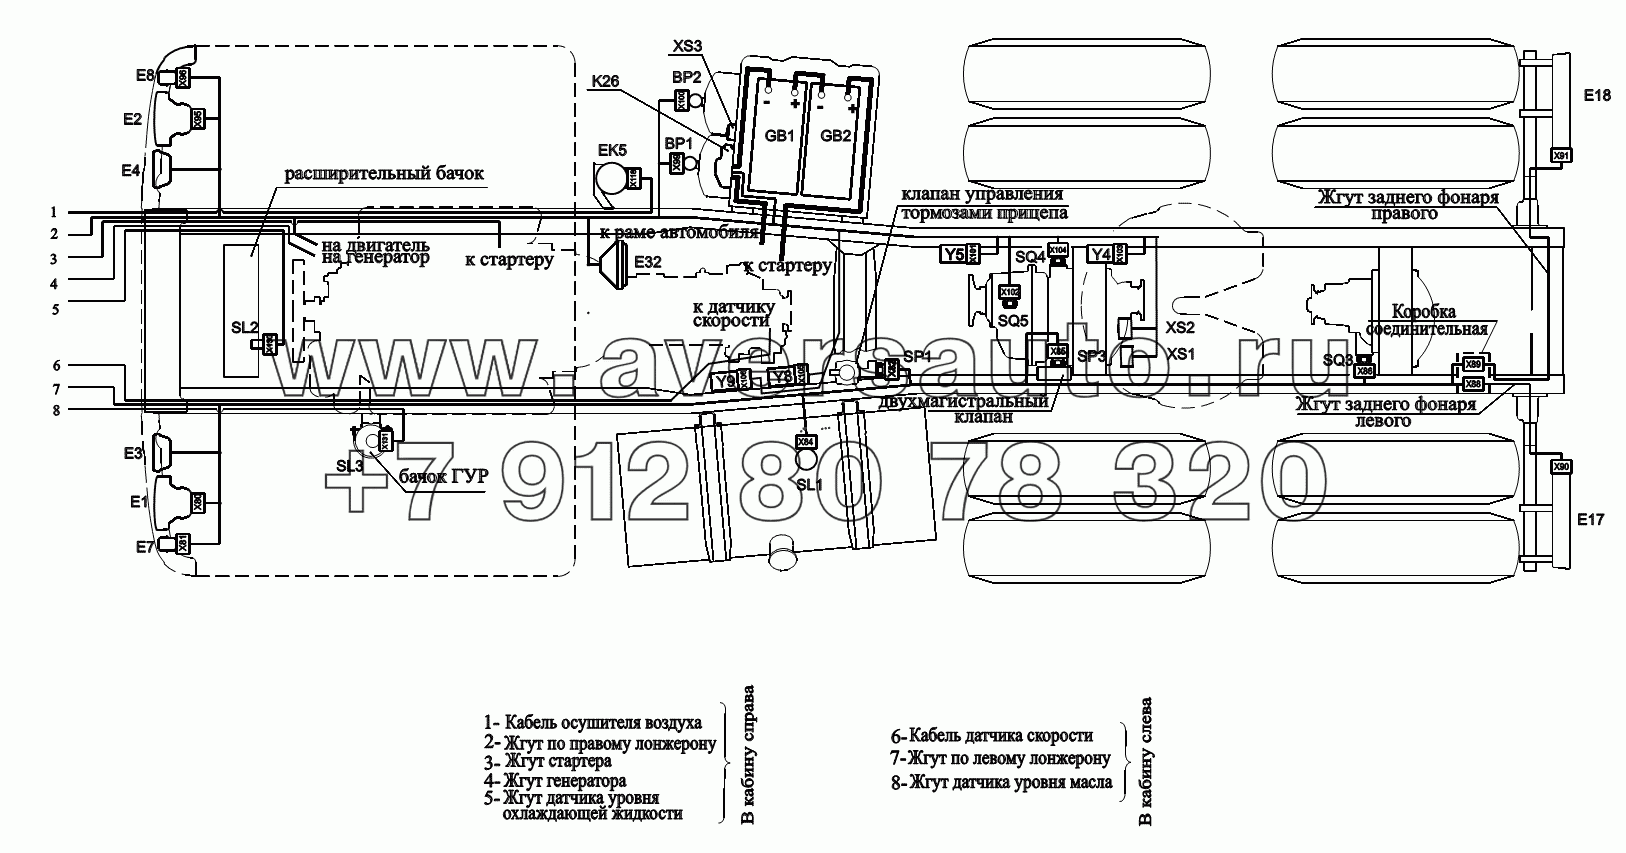 Расположение разъемов и элементов электрооборудования на шасси автомобилей (с гидроотбором)